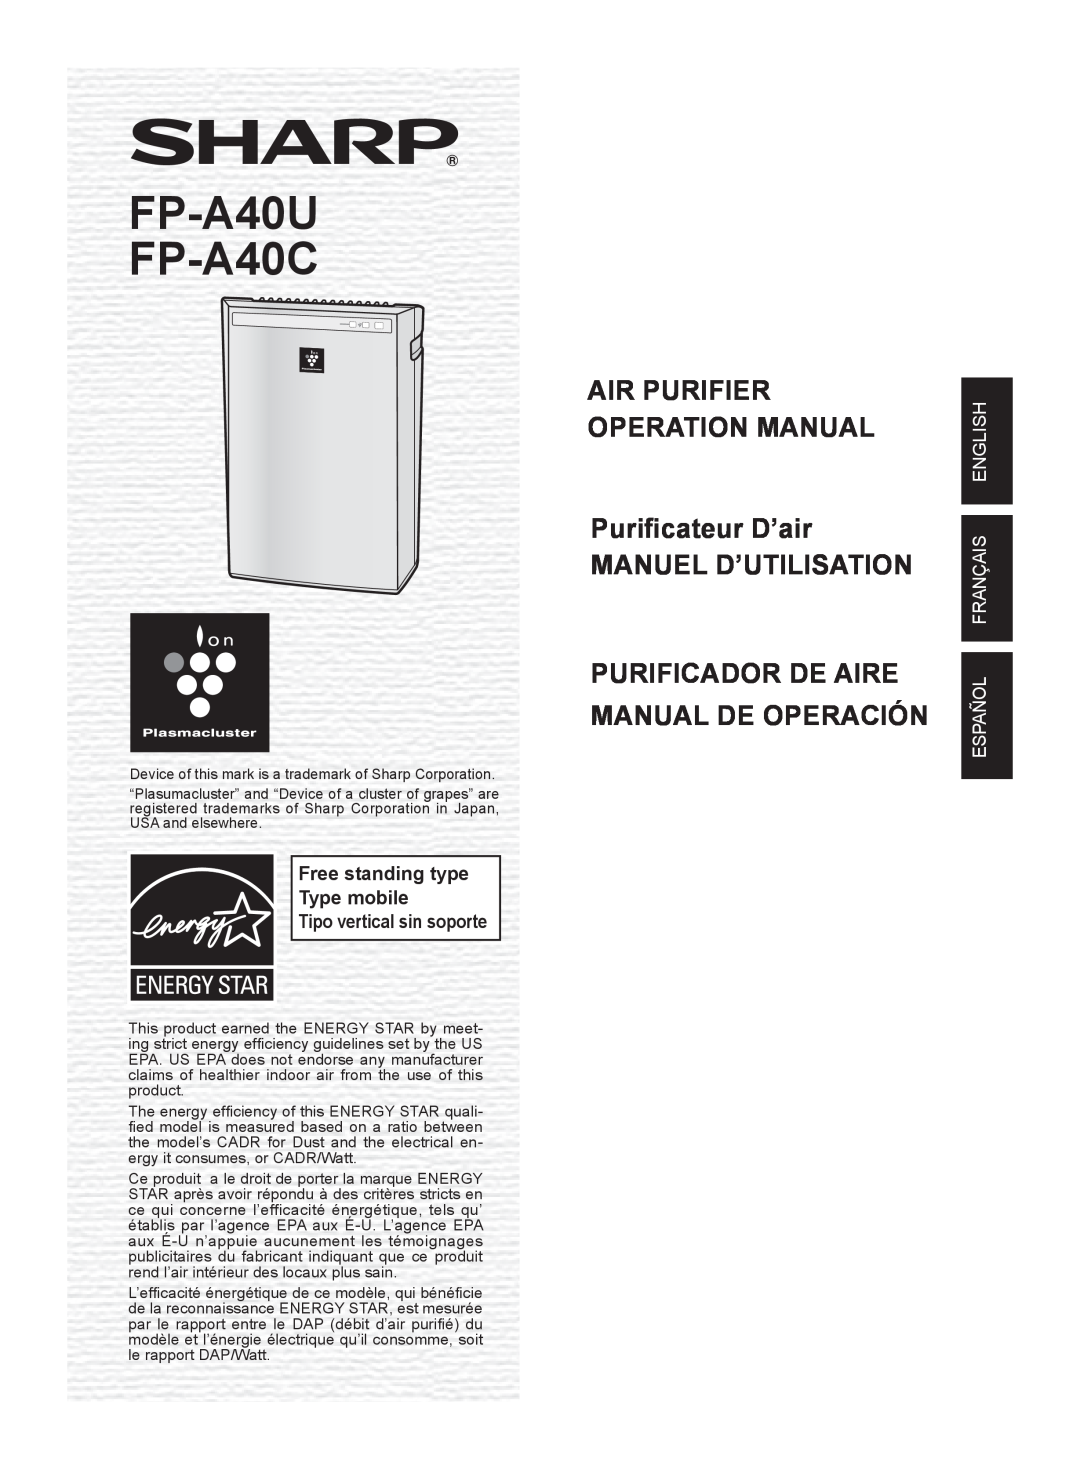 Sharp FP-A40UW operation manual FP-A40U FP-A40C, Manuel D’Utilisation, Purificador De Aire Manual De Operación 